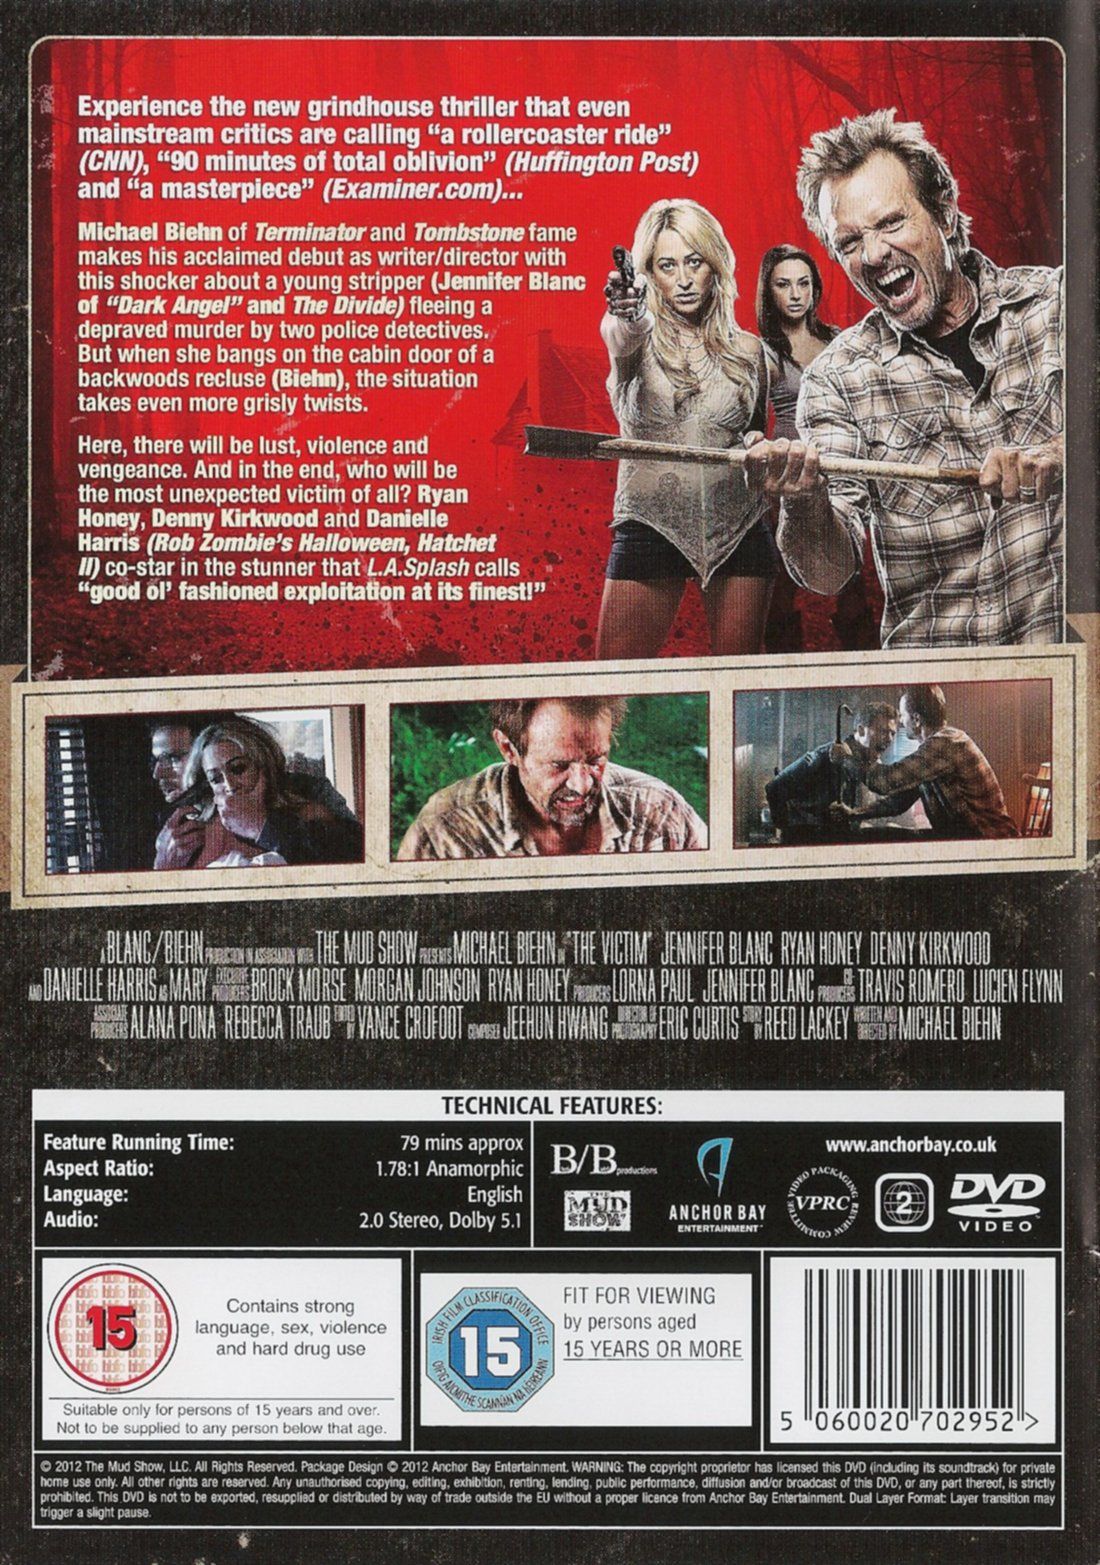 DVD Cover - Region 2 - Back
Keywords: ;media_cover;victim_media